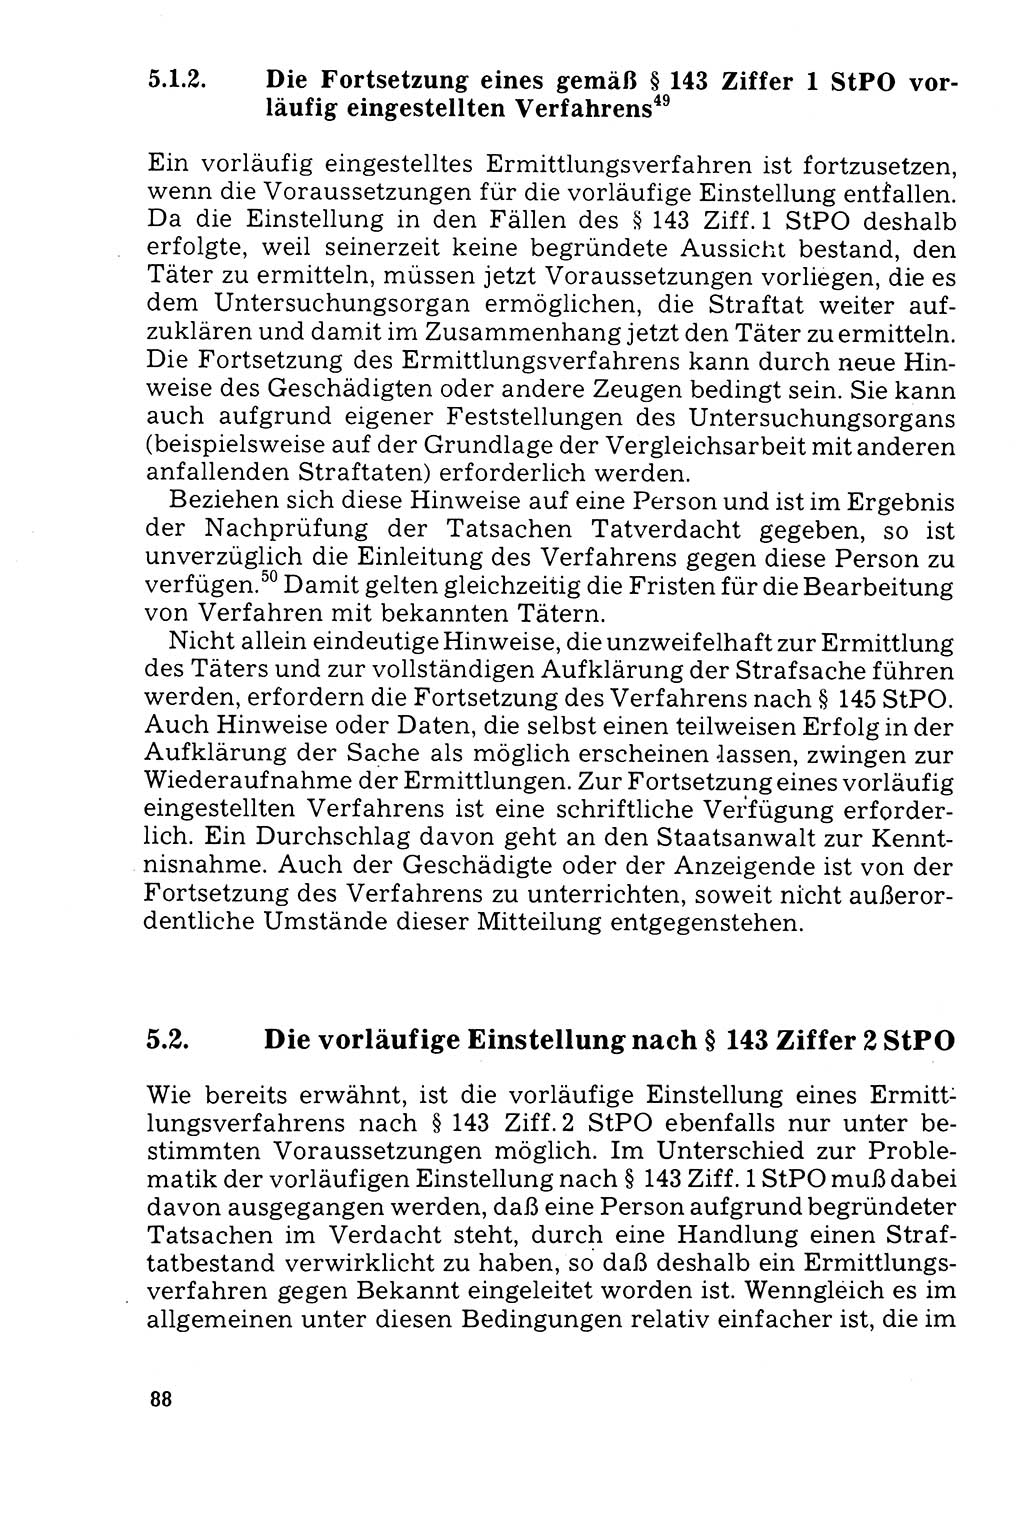 Der Abschluß des Ermittlungsverfahrens [Deutsche Demokratische Republik (DDR)] 1978, Seite 88 (Abschl. EV DDR 1978, S. 88)